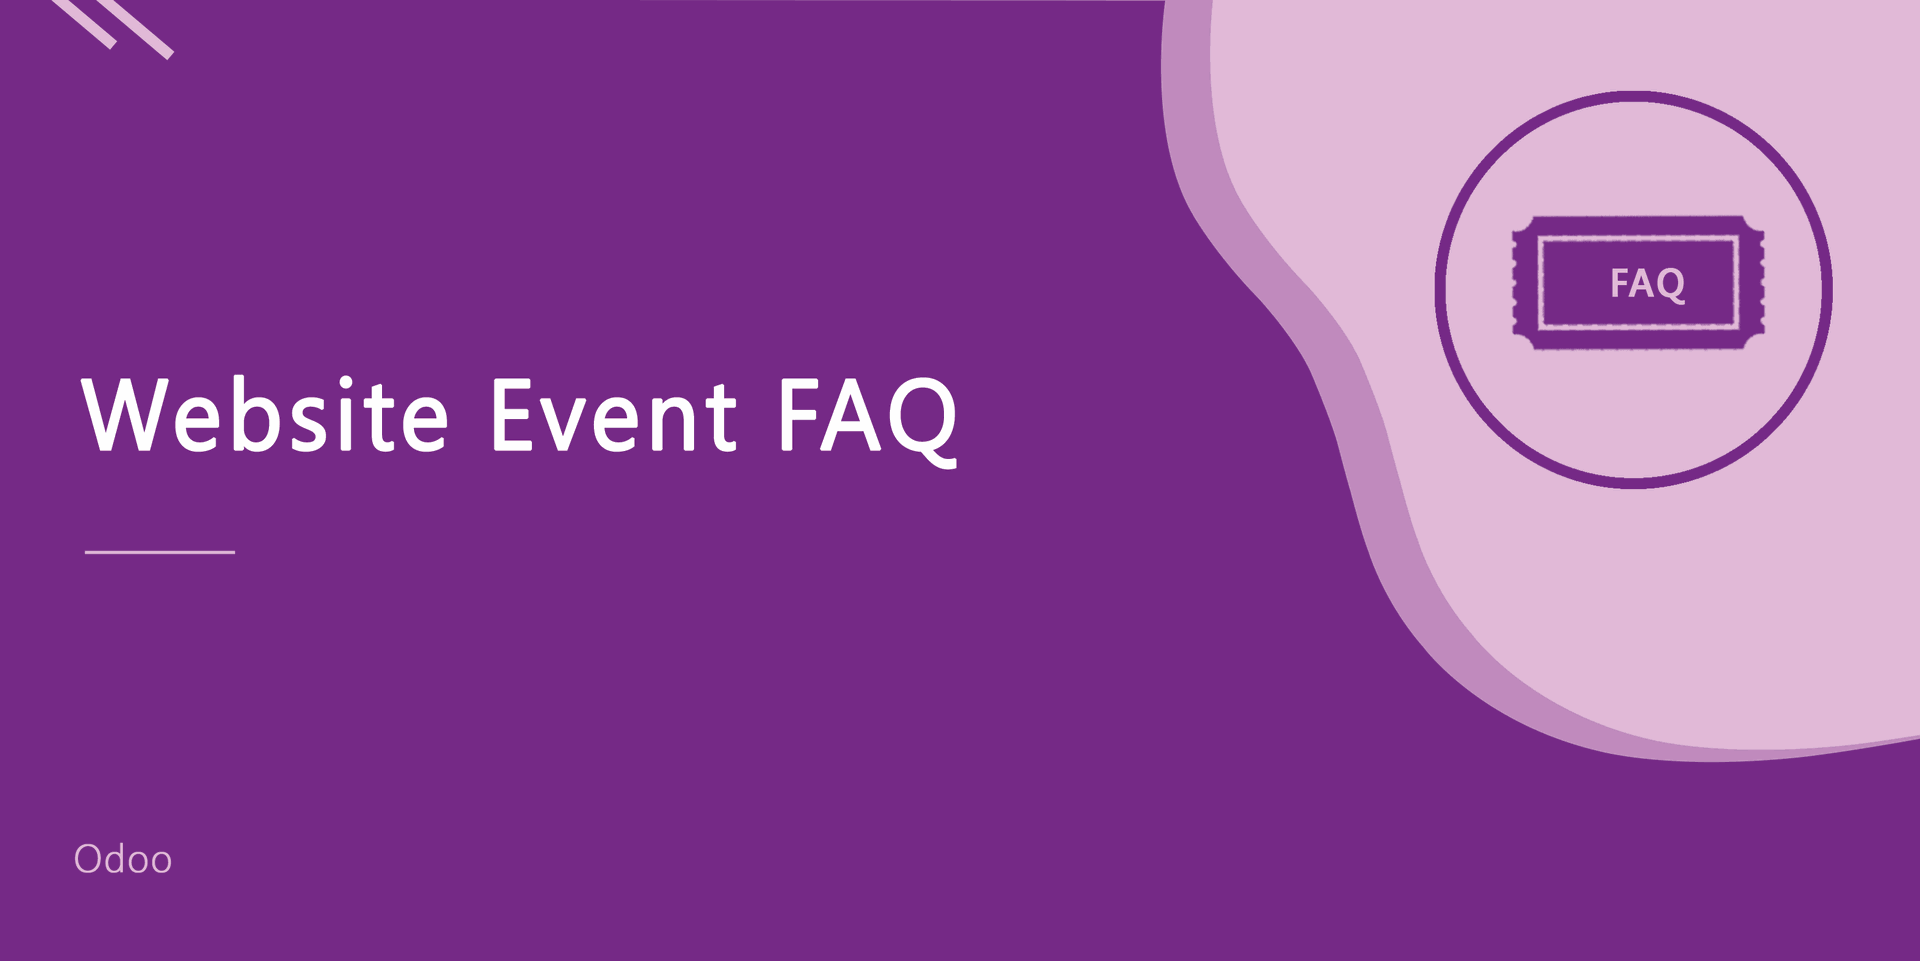 Website Event FAQ
